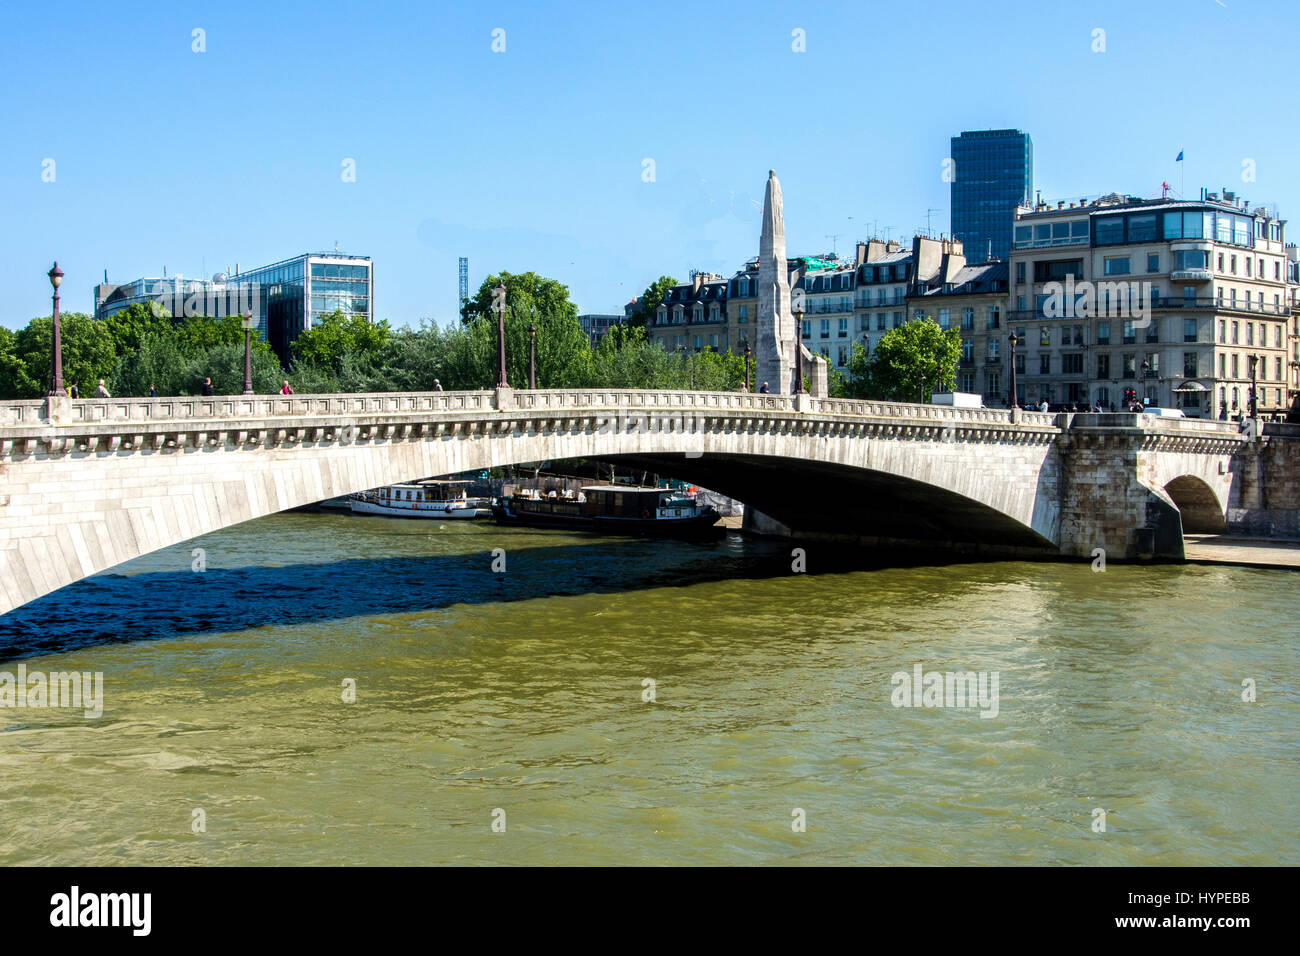 France, Paris 6eme, Pont de la Tournelle bridge above the Seine River with statue of St Genevieve and the famous restaurant La Tour d'Argent on the banks Stock Photo